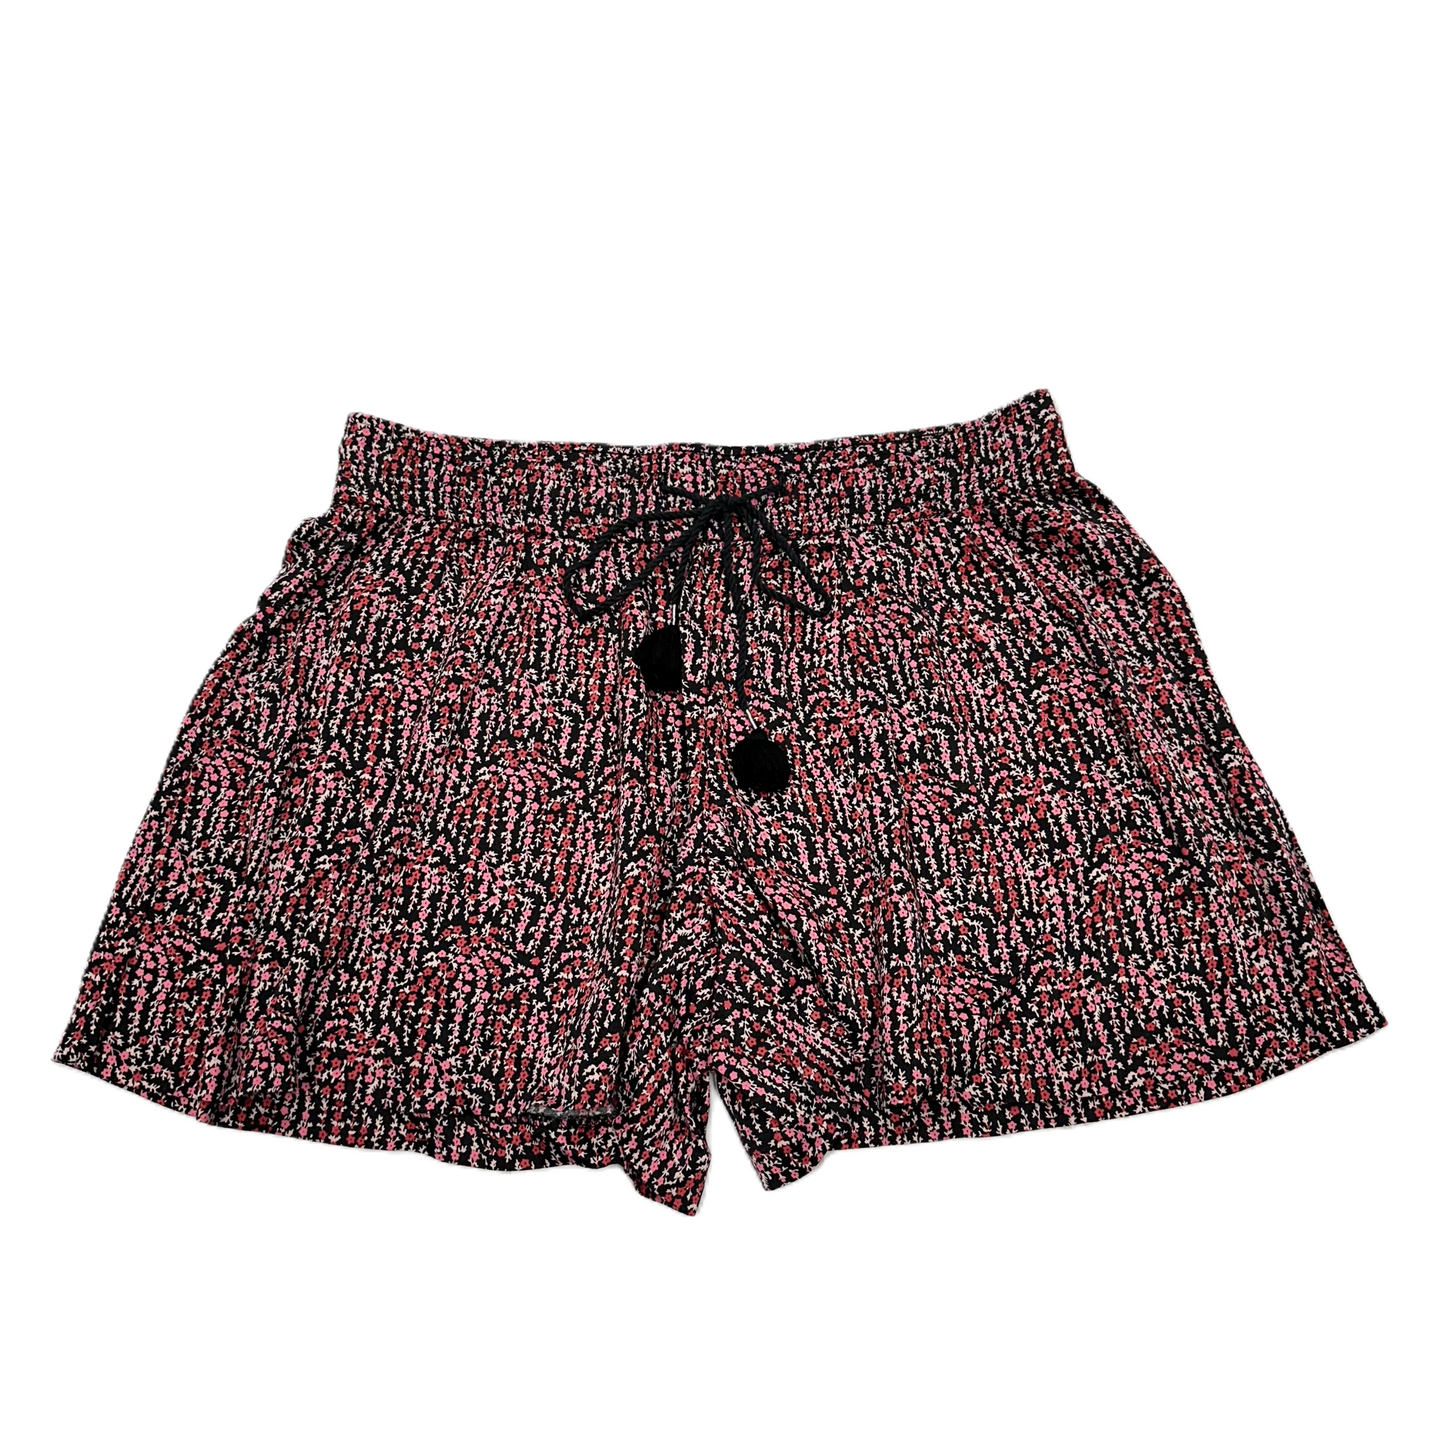 Black & Pink Shorts By Loft, Size: S